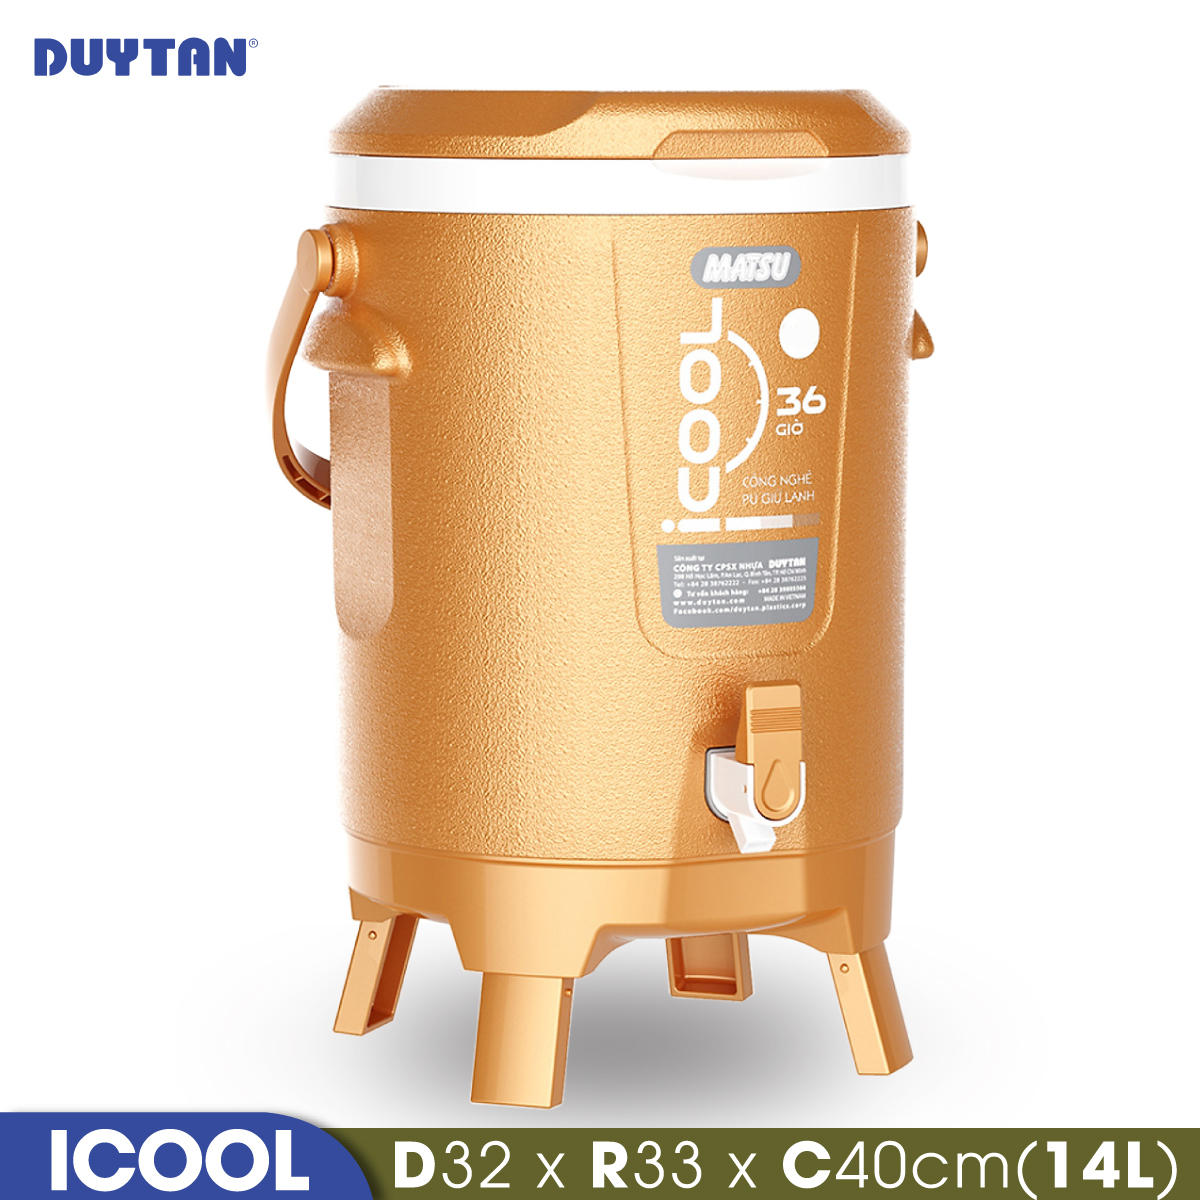 Bình đá giữ nhiệt nhựa Duy Tân Icool 14 lít (32 x 33 x 40 cm) - 05295 - Hàng chính hãng